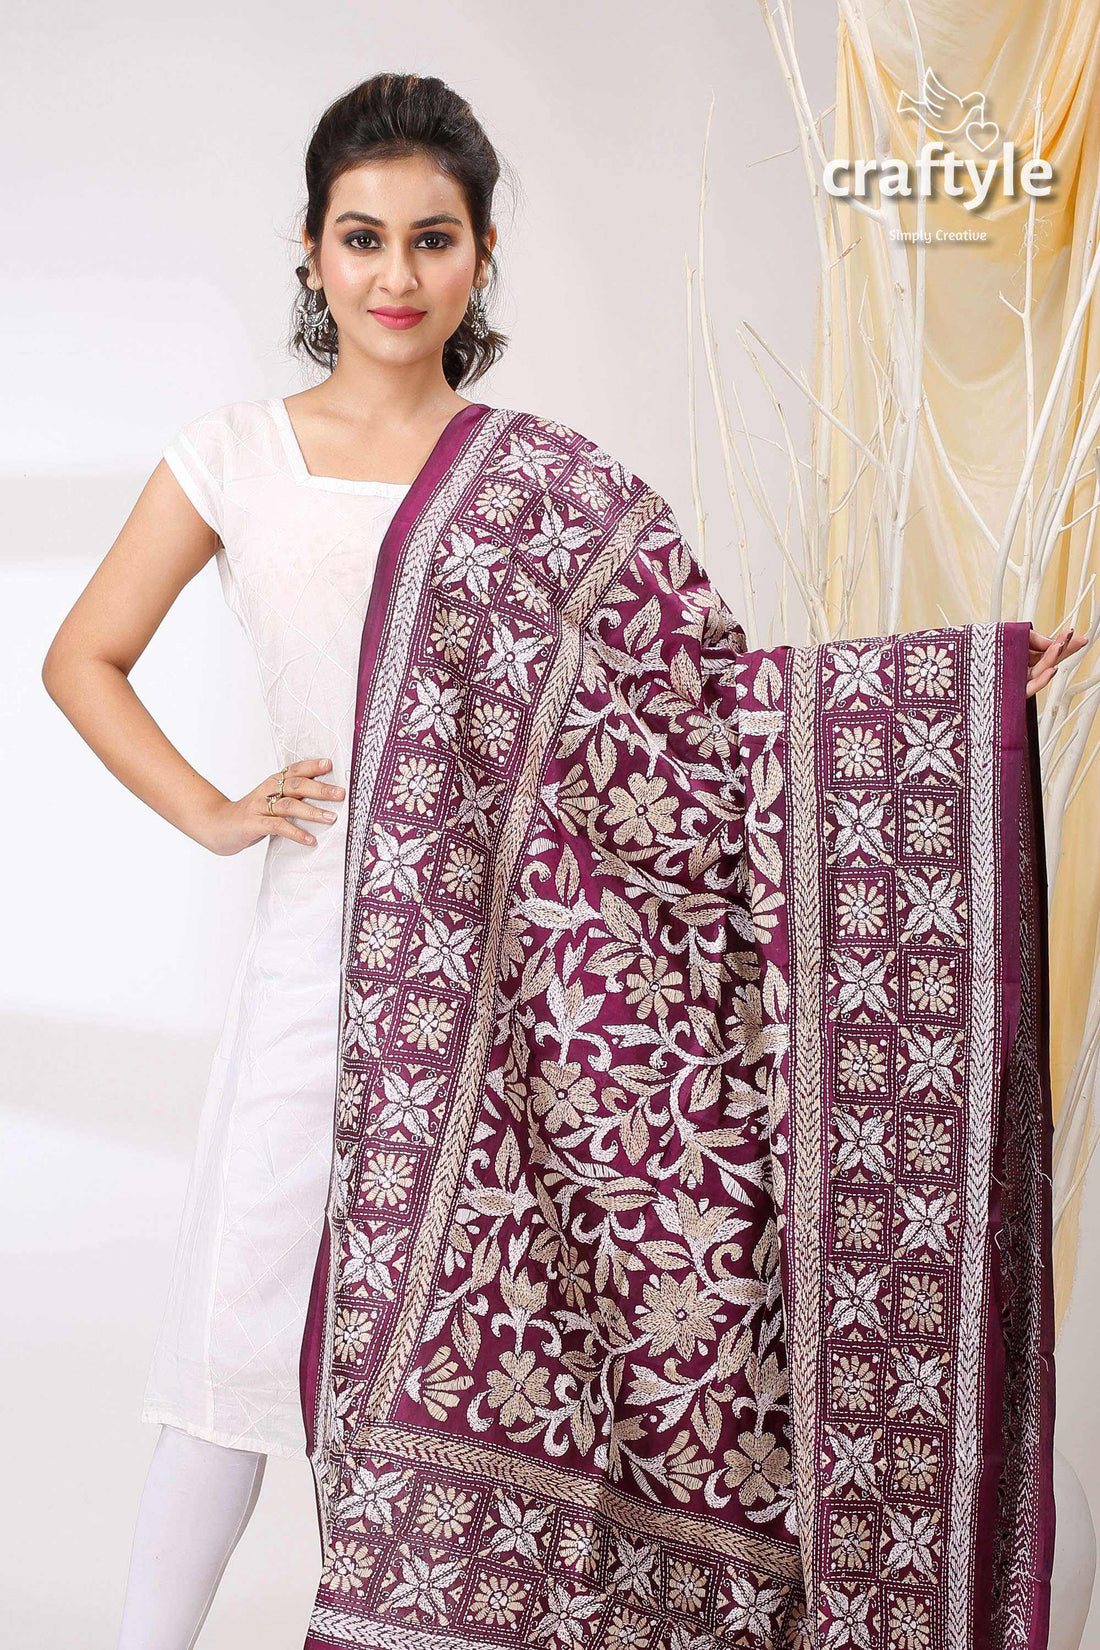 Imperial Purple Pure Bangalore Silk Kantha Stitch Shawl - Craftyle